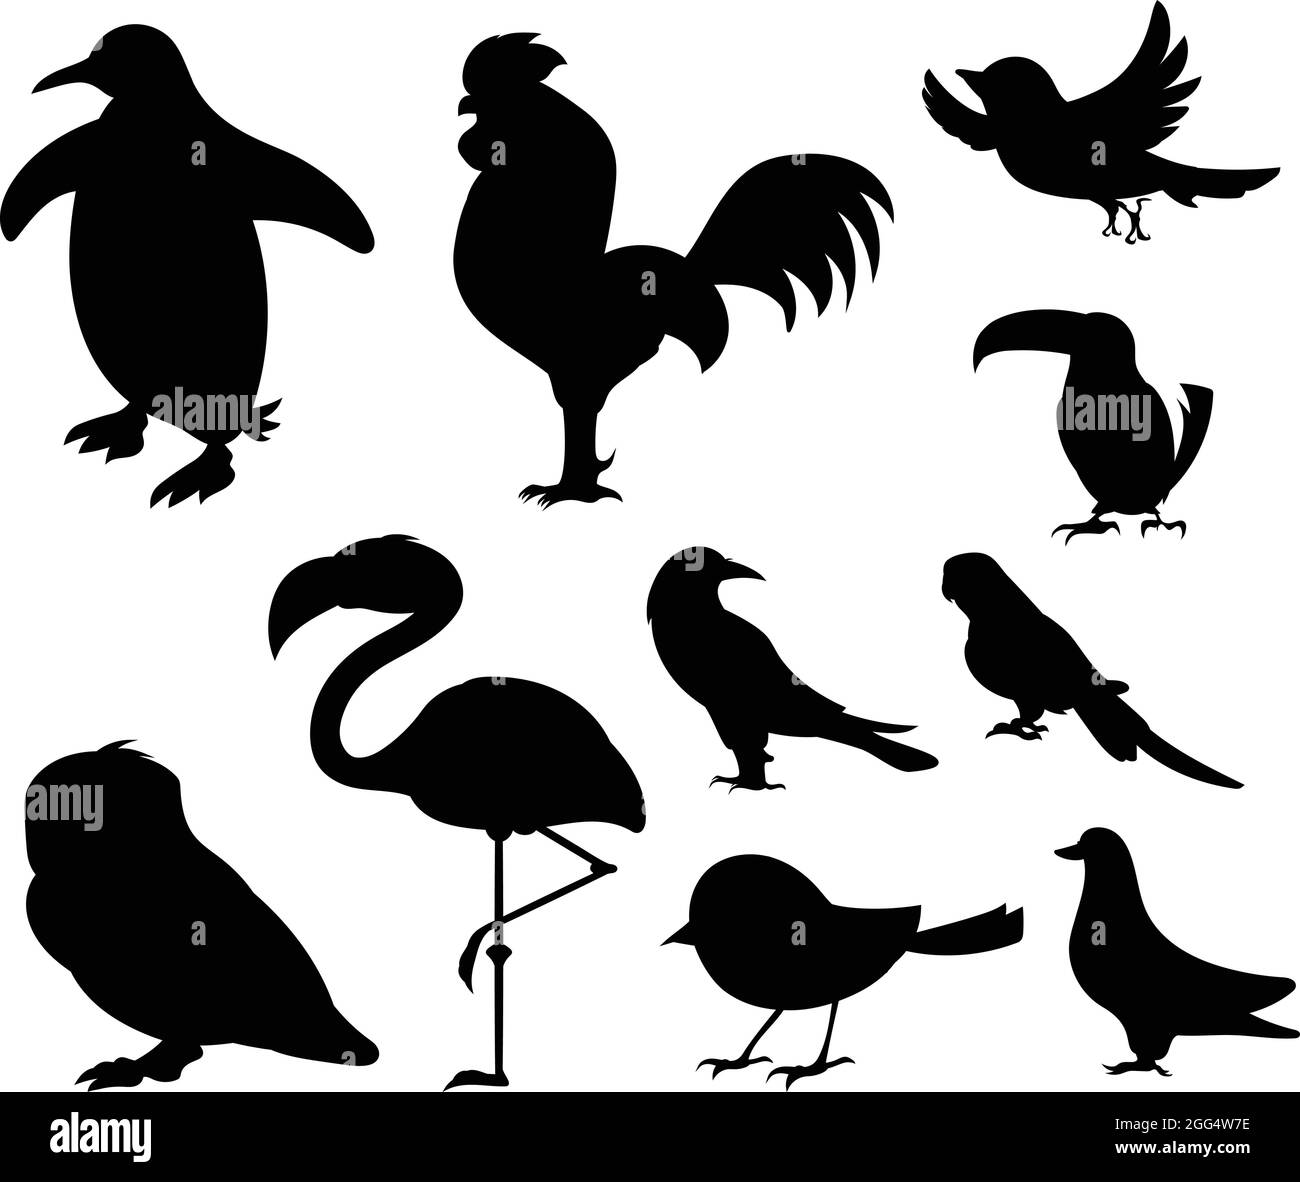 Oiseaux de différentes parties du monde. Oiseaux communs. Pingouin Bruant de poulet Dodo oiseau Pigeon Duck Swan Owl Crow. Silhouette d'oiseau noir contre Ba blanc Illustration de Vecteur